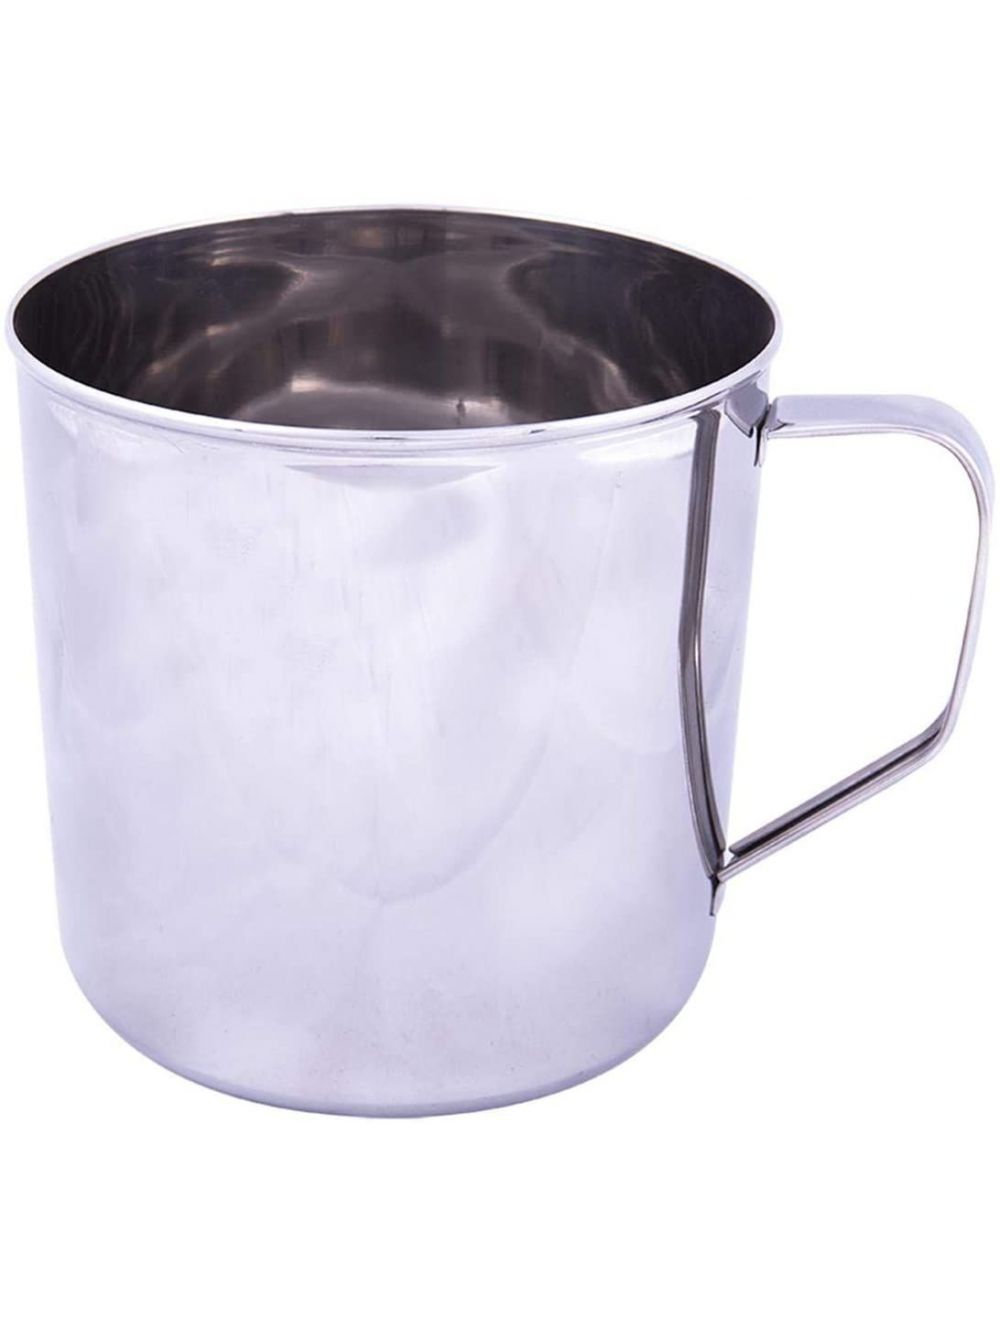 Raj 10 cm Stainless Steel Mug, Silver-NM0010